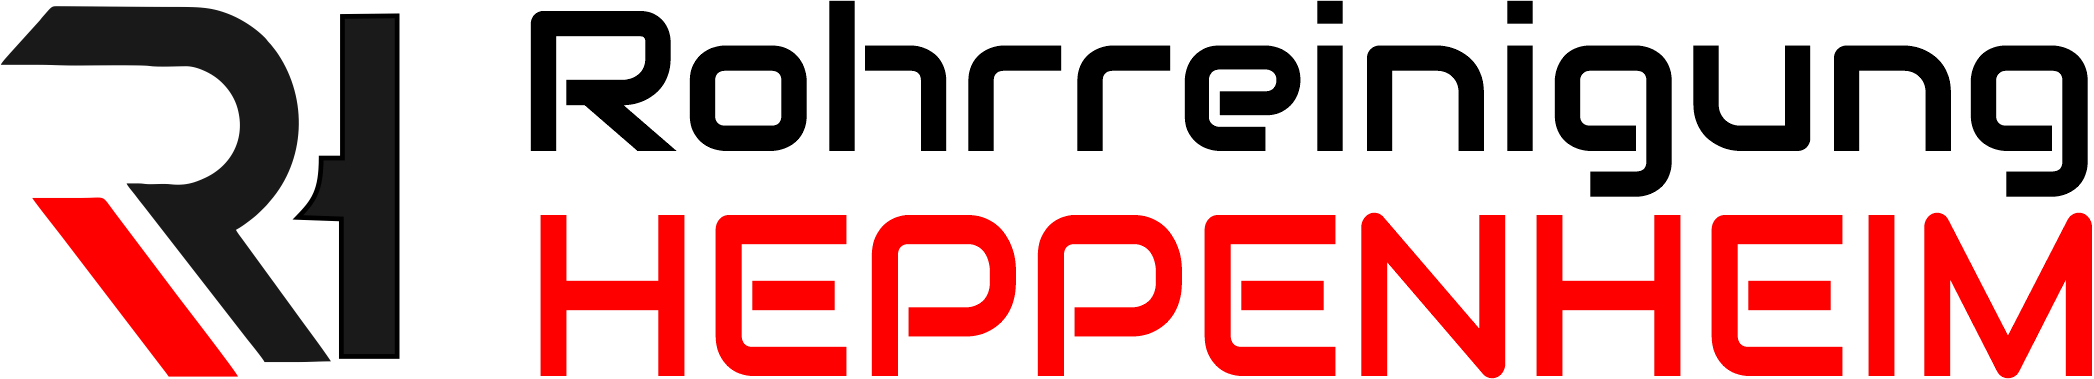 Rohrreinigung Heppenheim Logo